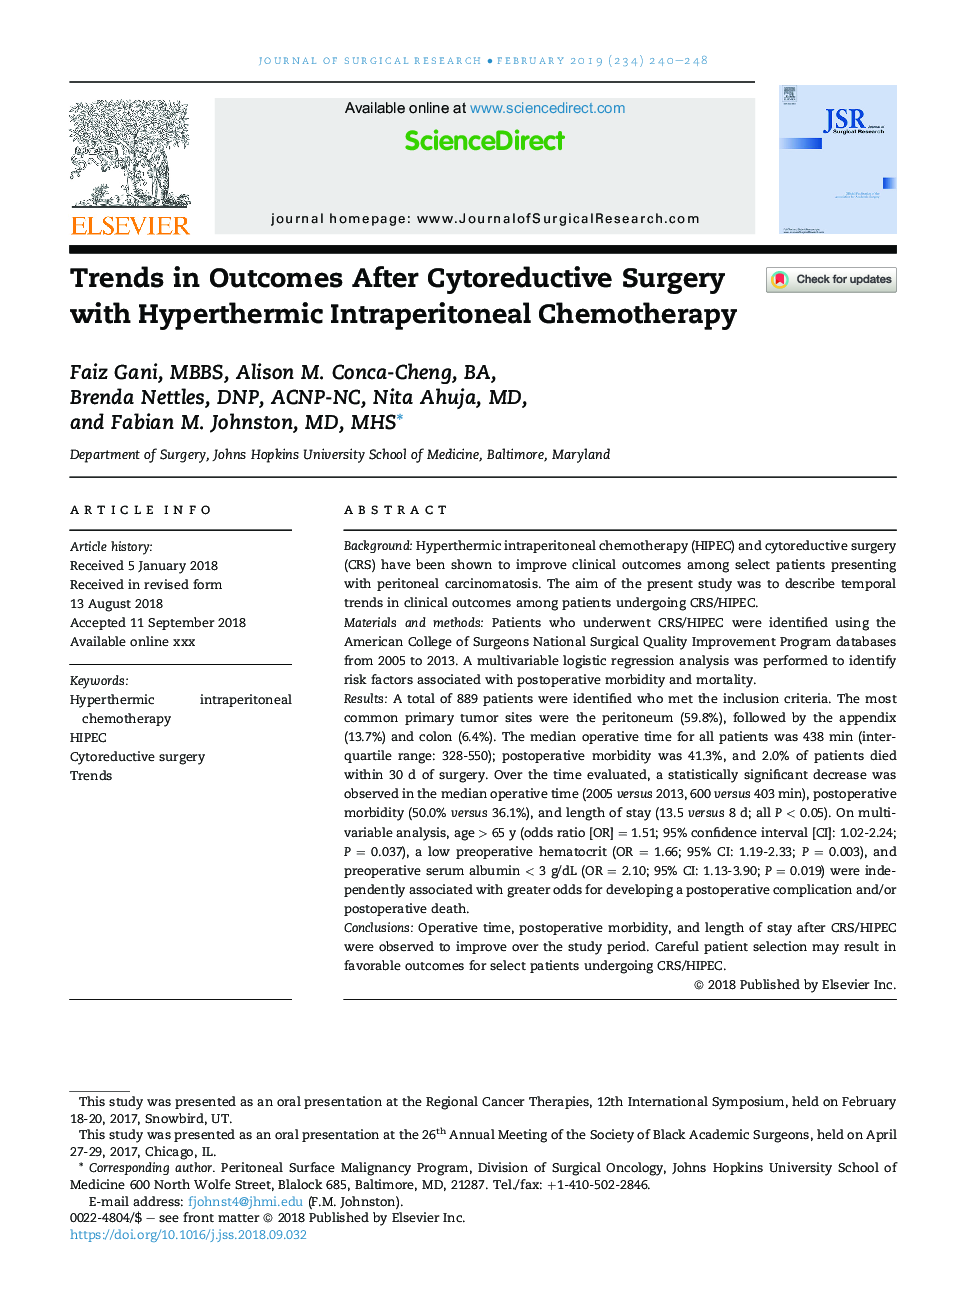 روند درمان پس از جراحی سیتوپاتولوژیک با شیمیدرمانی فتوتراپی هیپرترمی